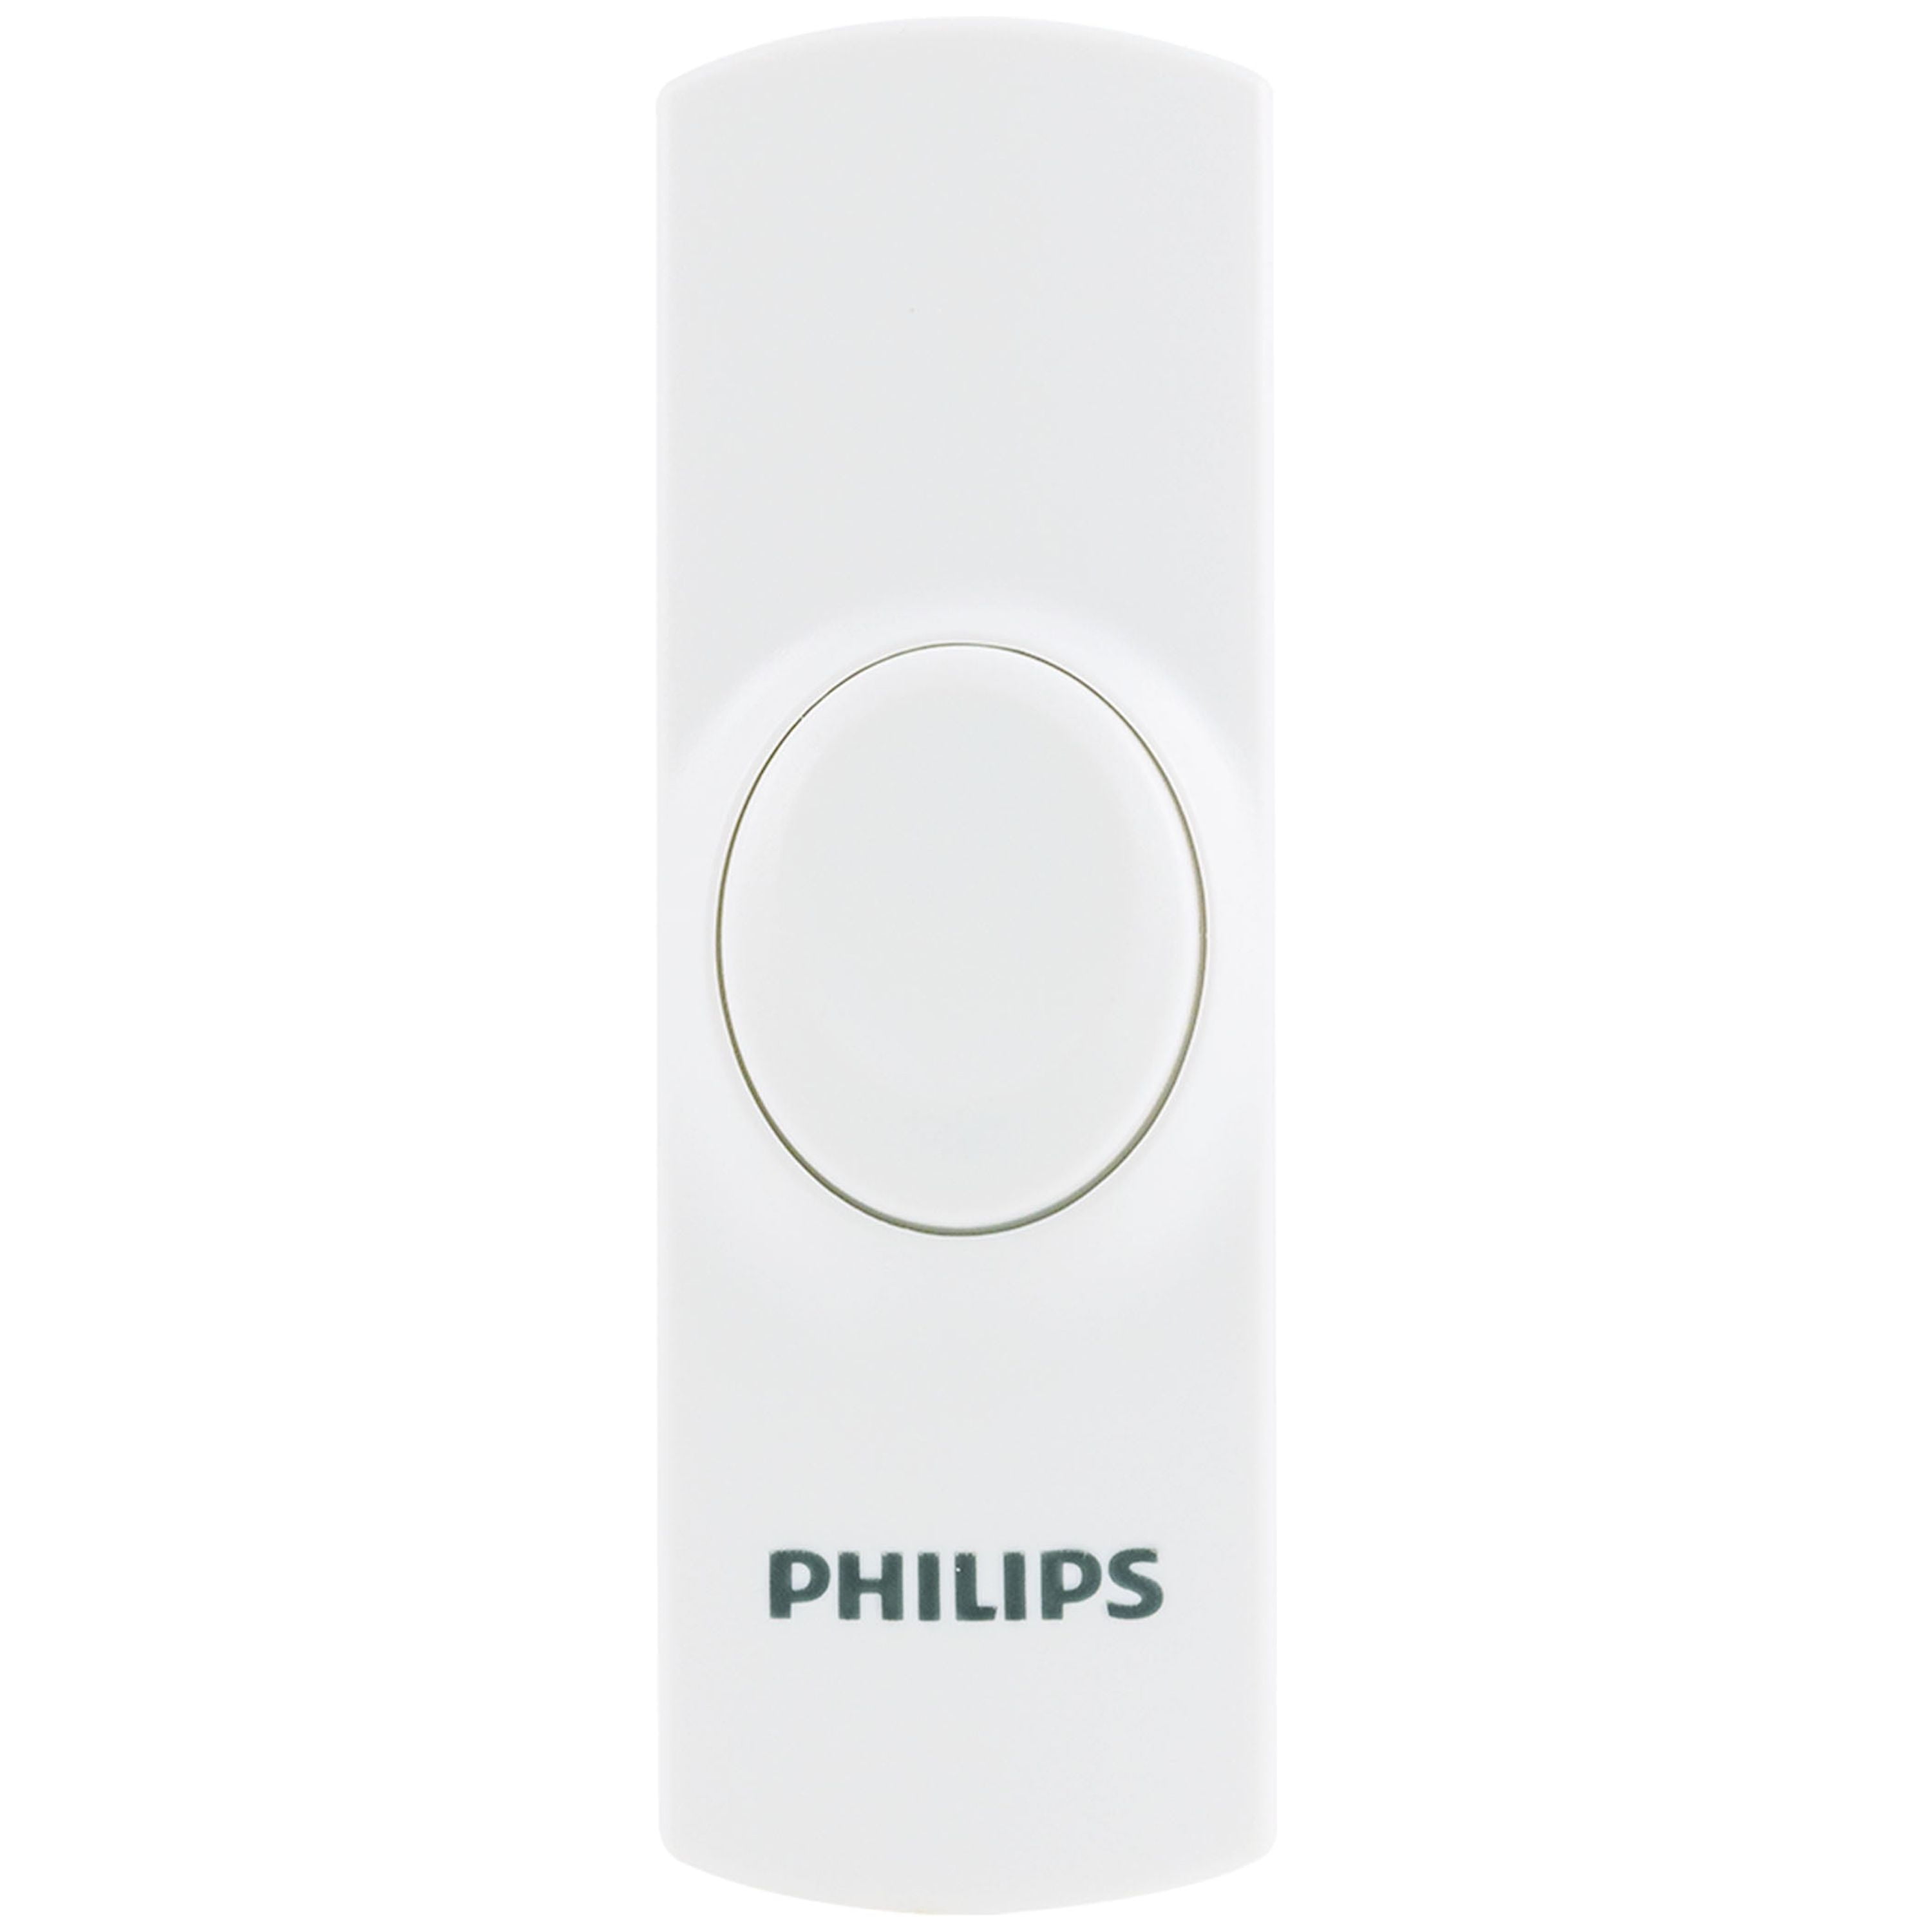 Philips Wireless Push Button Doorbell, White, DES4110R/27